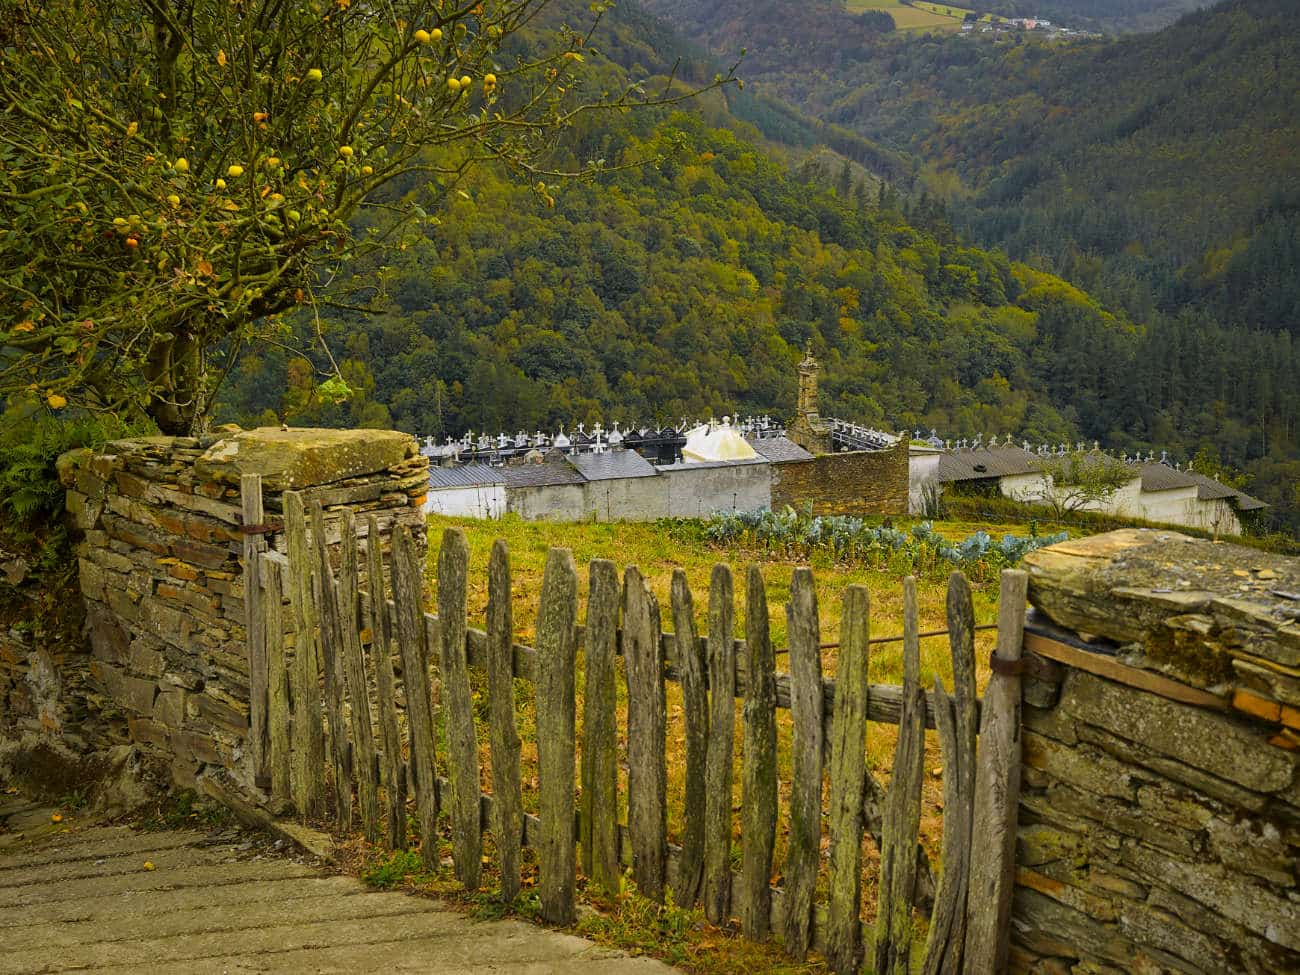 Taramundi Asturias